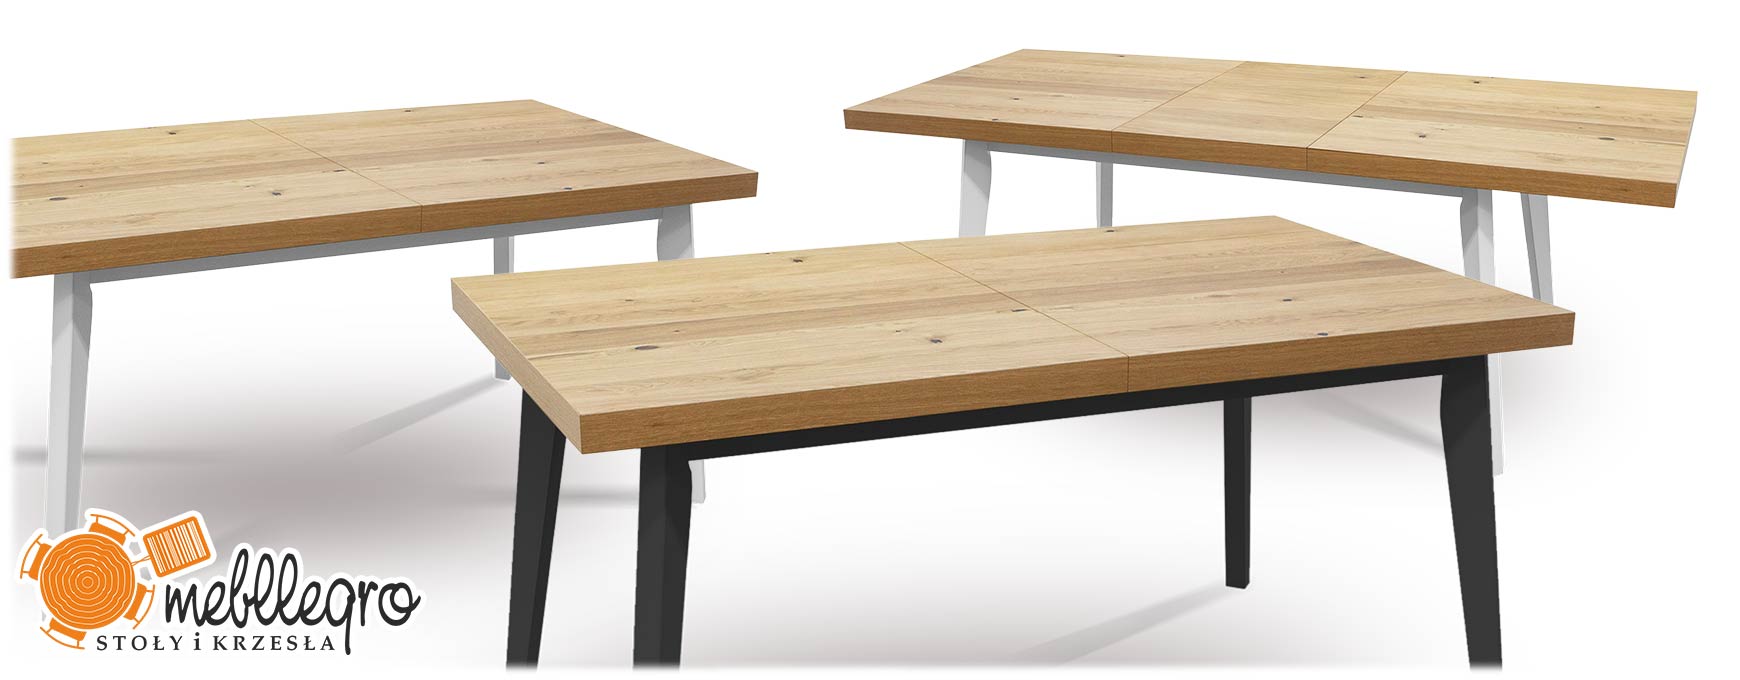 Stół drewniany rozkładany S67 skandynawski z białymi lub czarnymi nogami